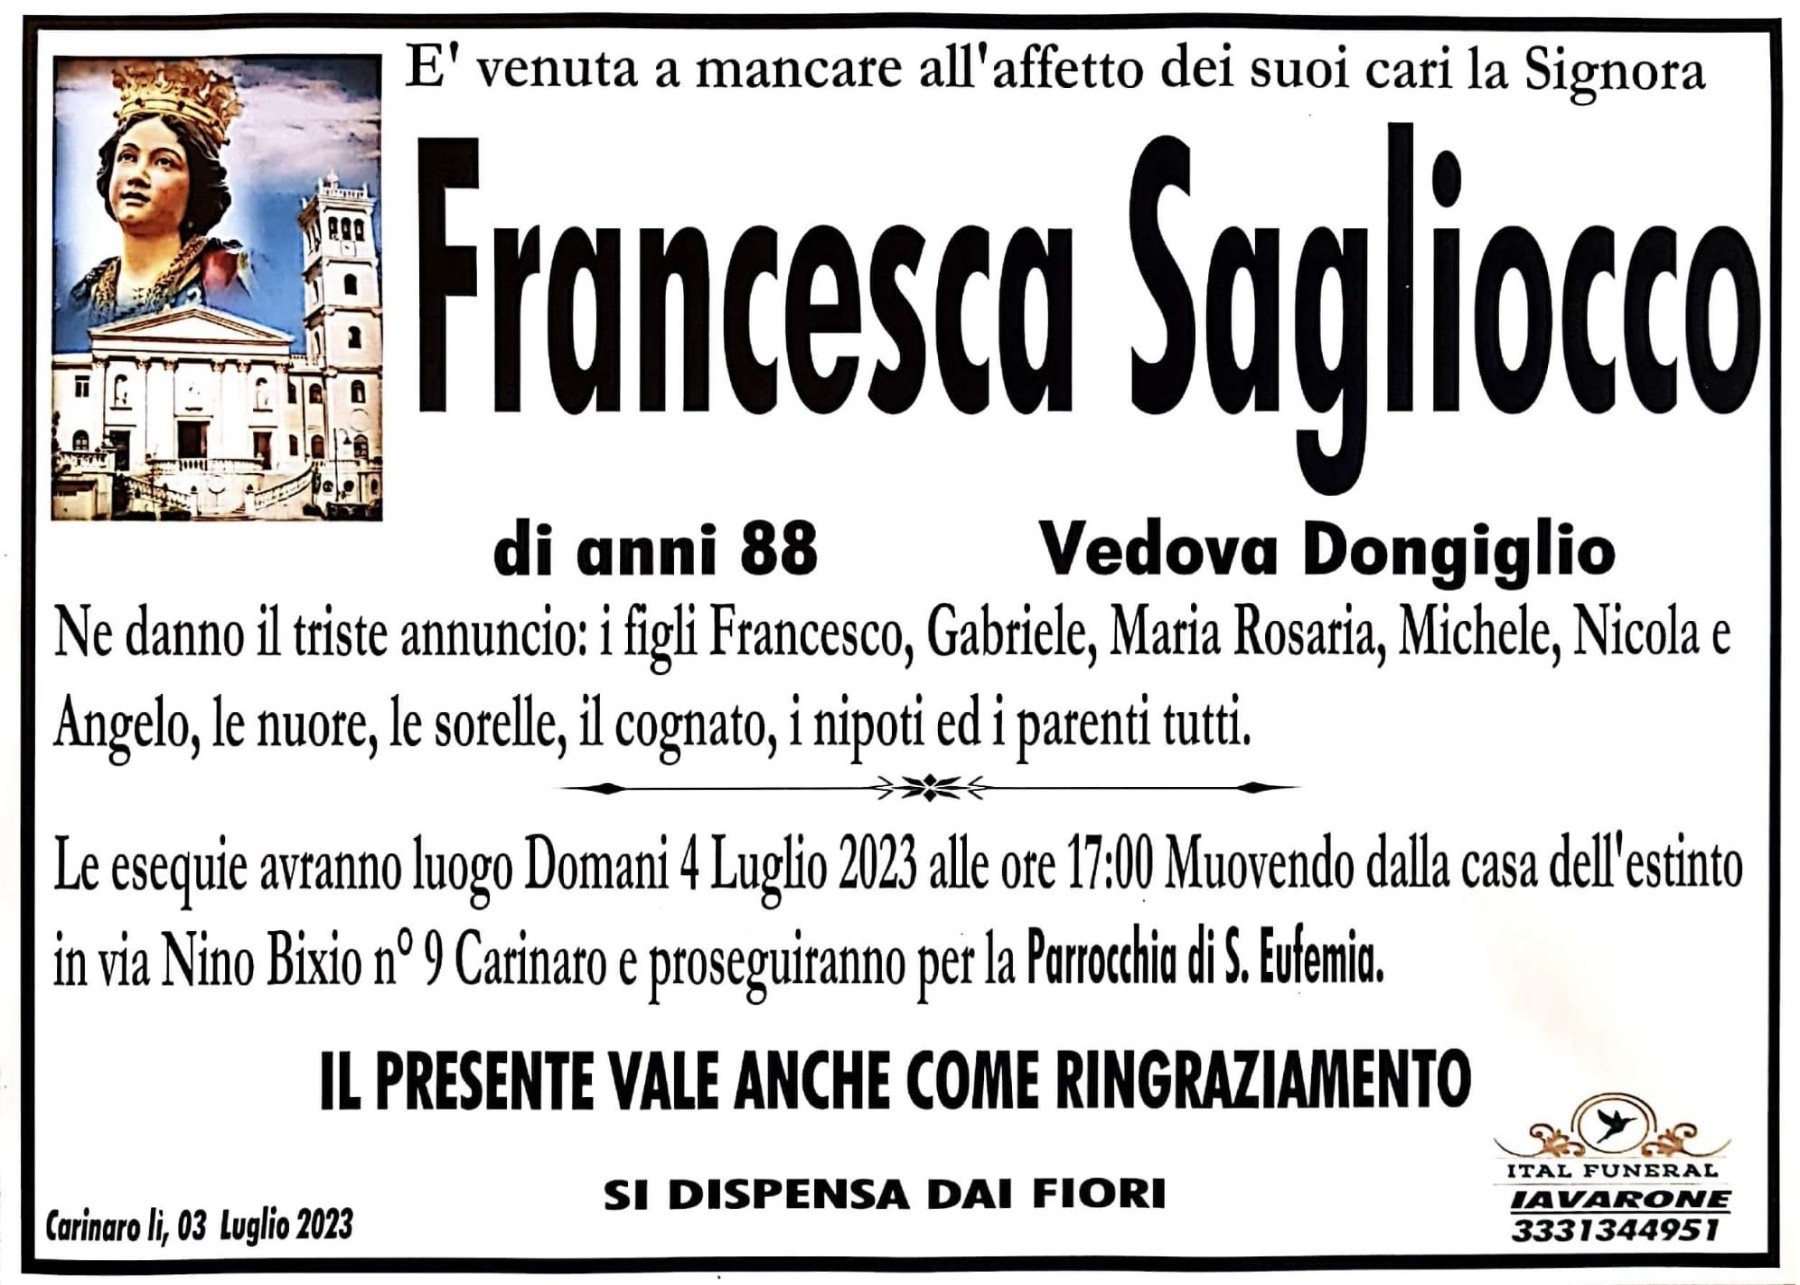 Francesca Sagliocco